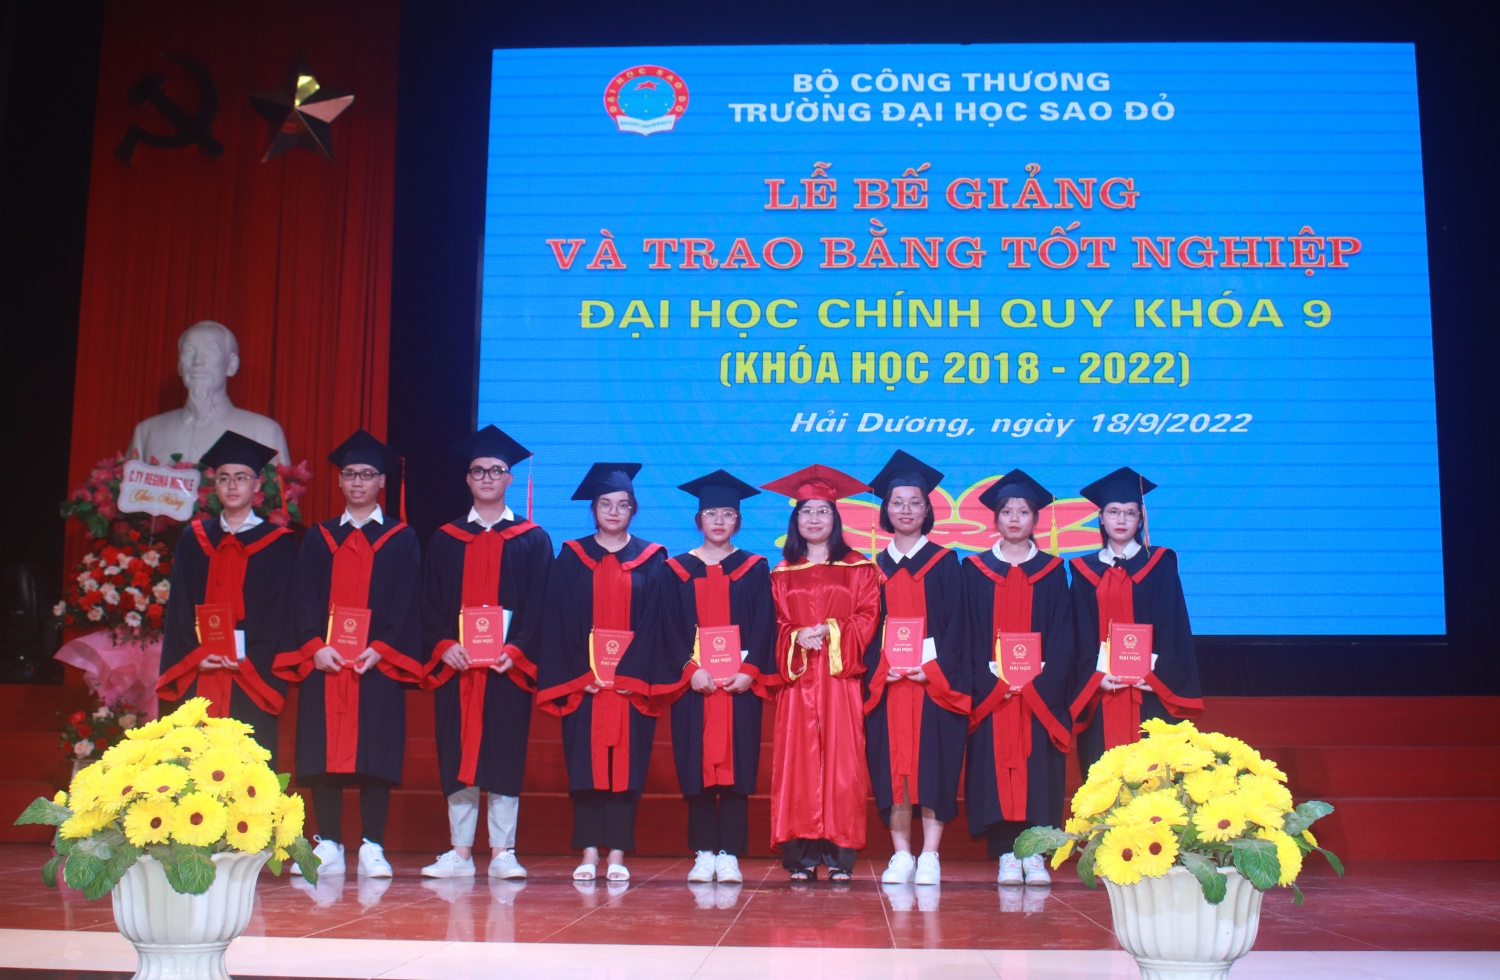 Trường Đại học Sao Đỏ long trọng tổ chức Lễ bế giảng và trao bằng tốt nghiệp Đại học chính quy khóa 9